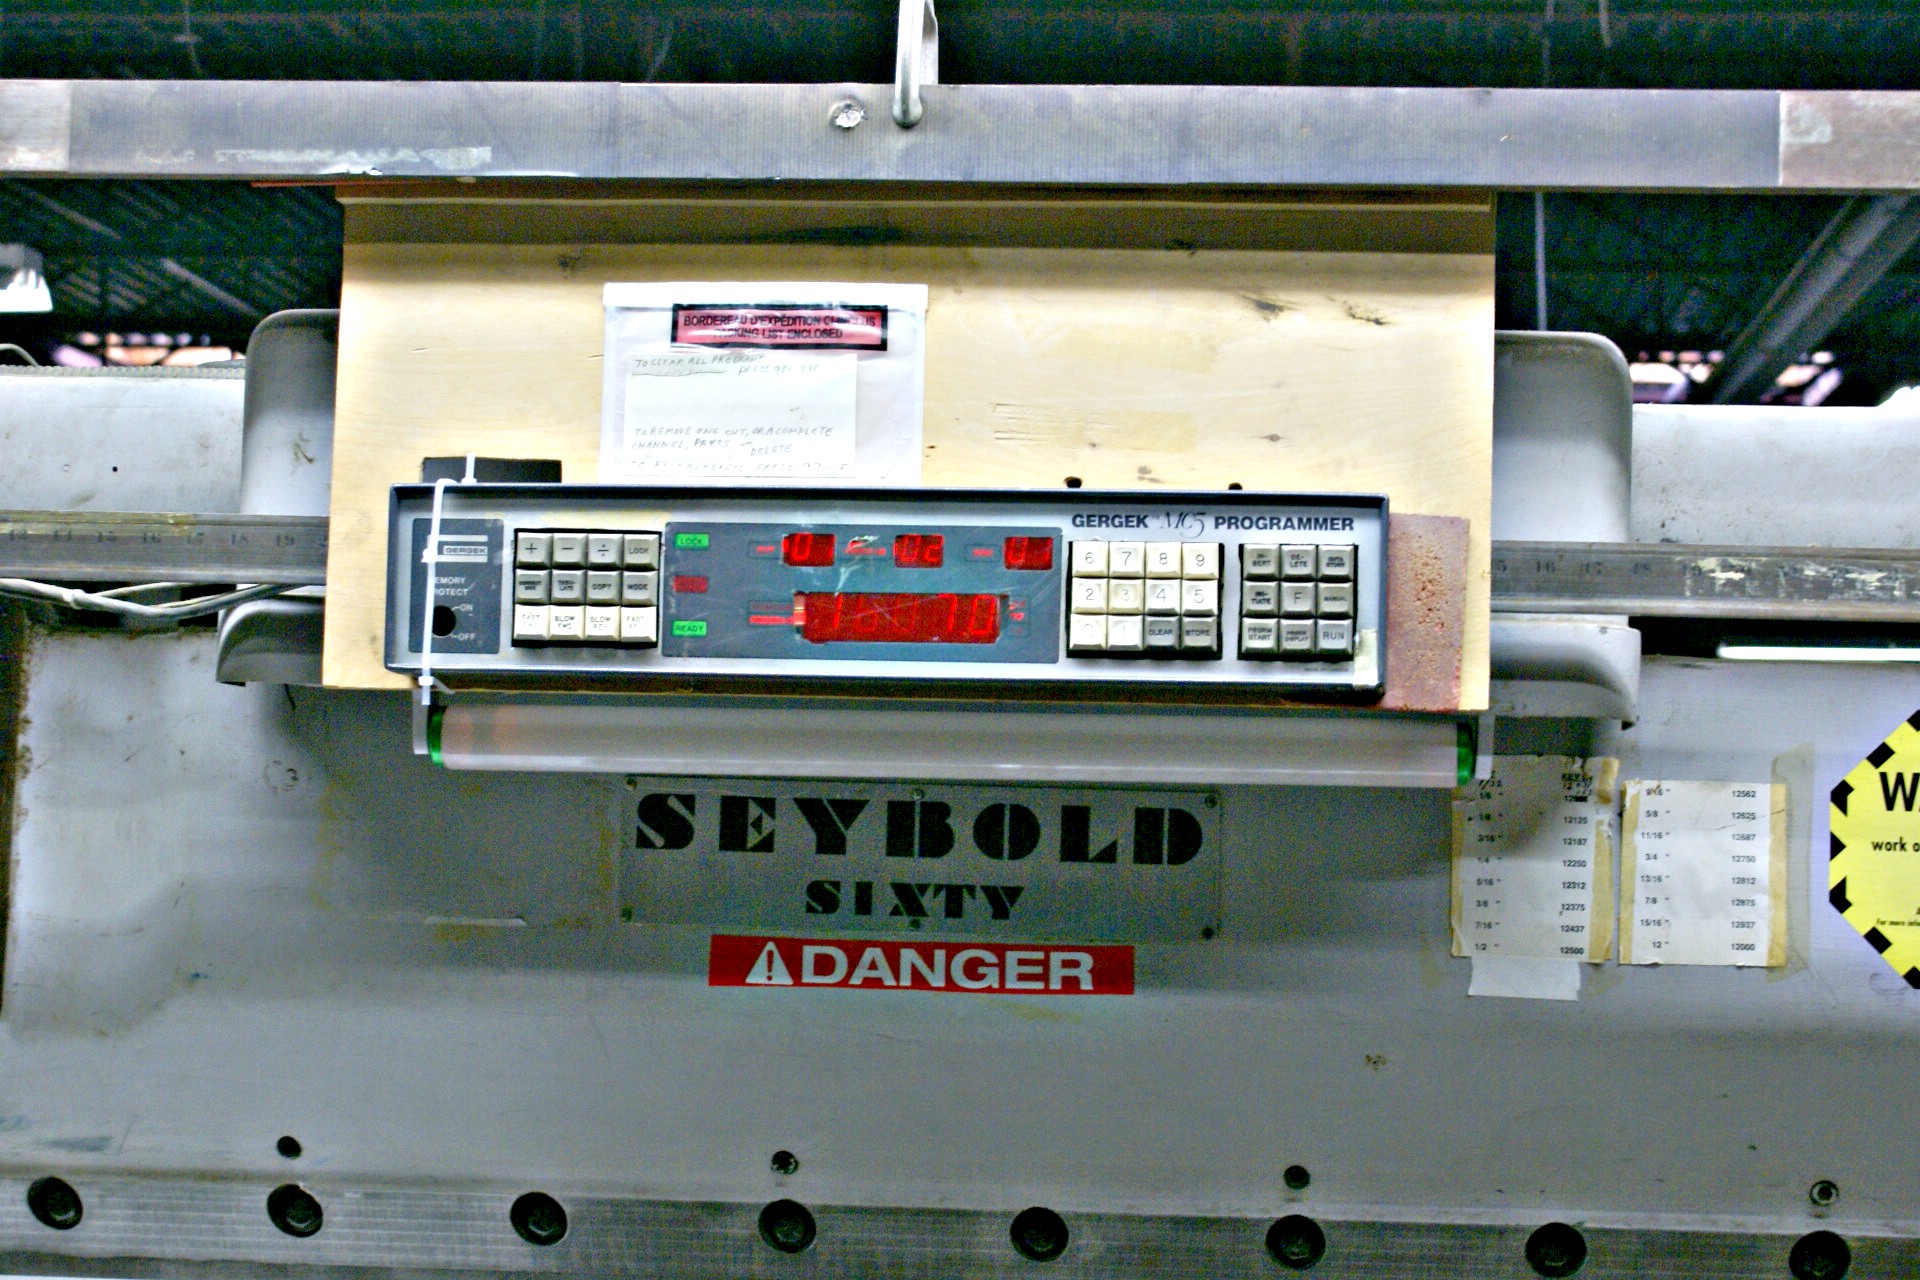 Seybold 65″ Paper Cutter (used) Item # UFE-C1725 (Canada)